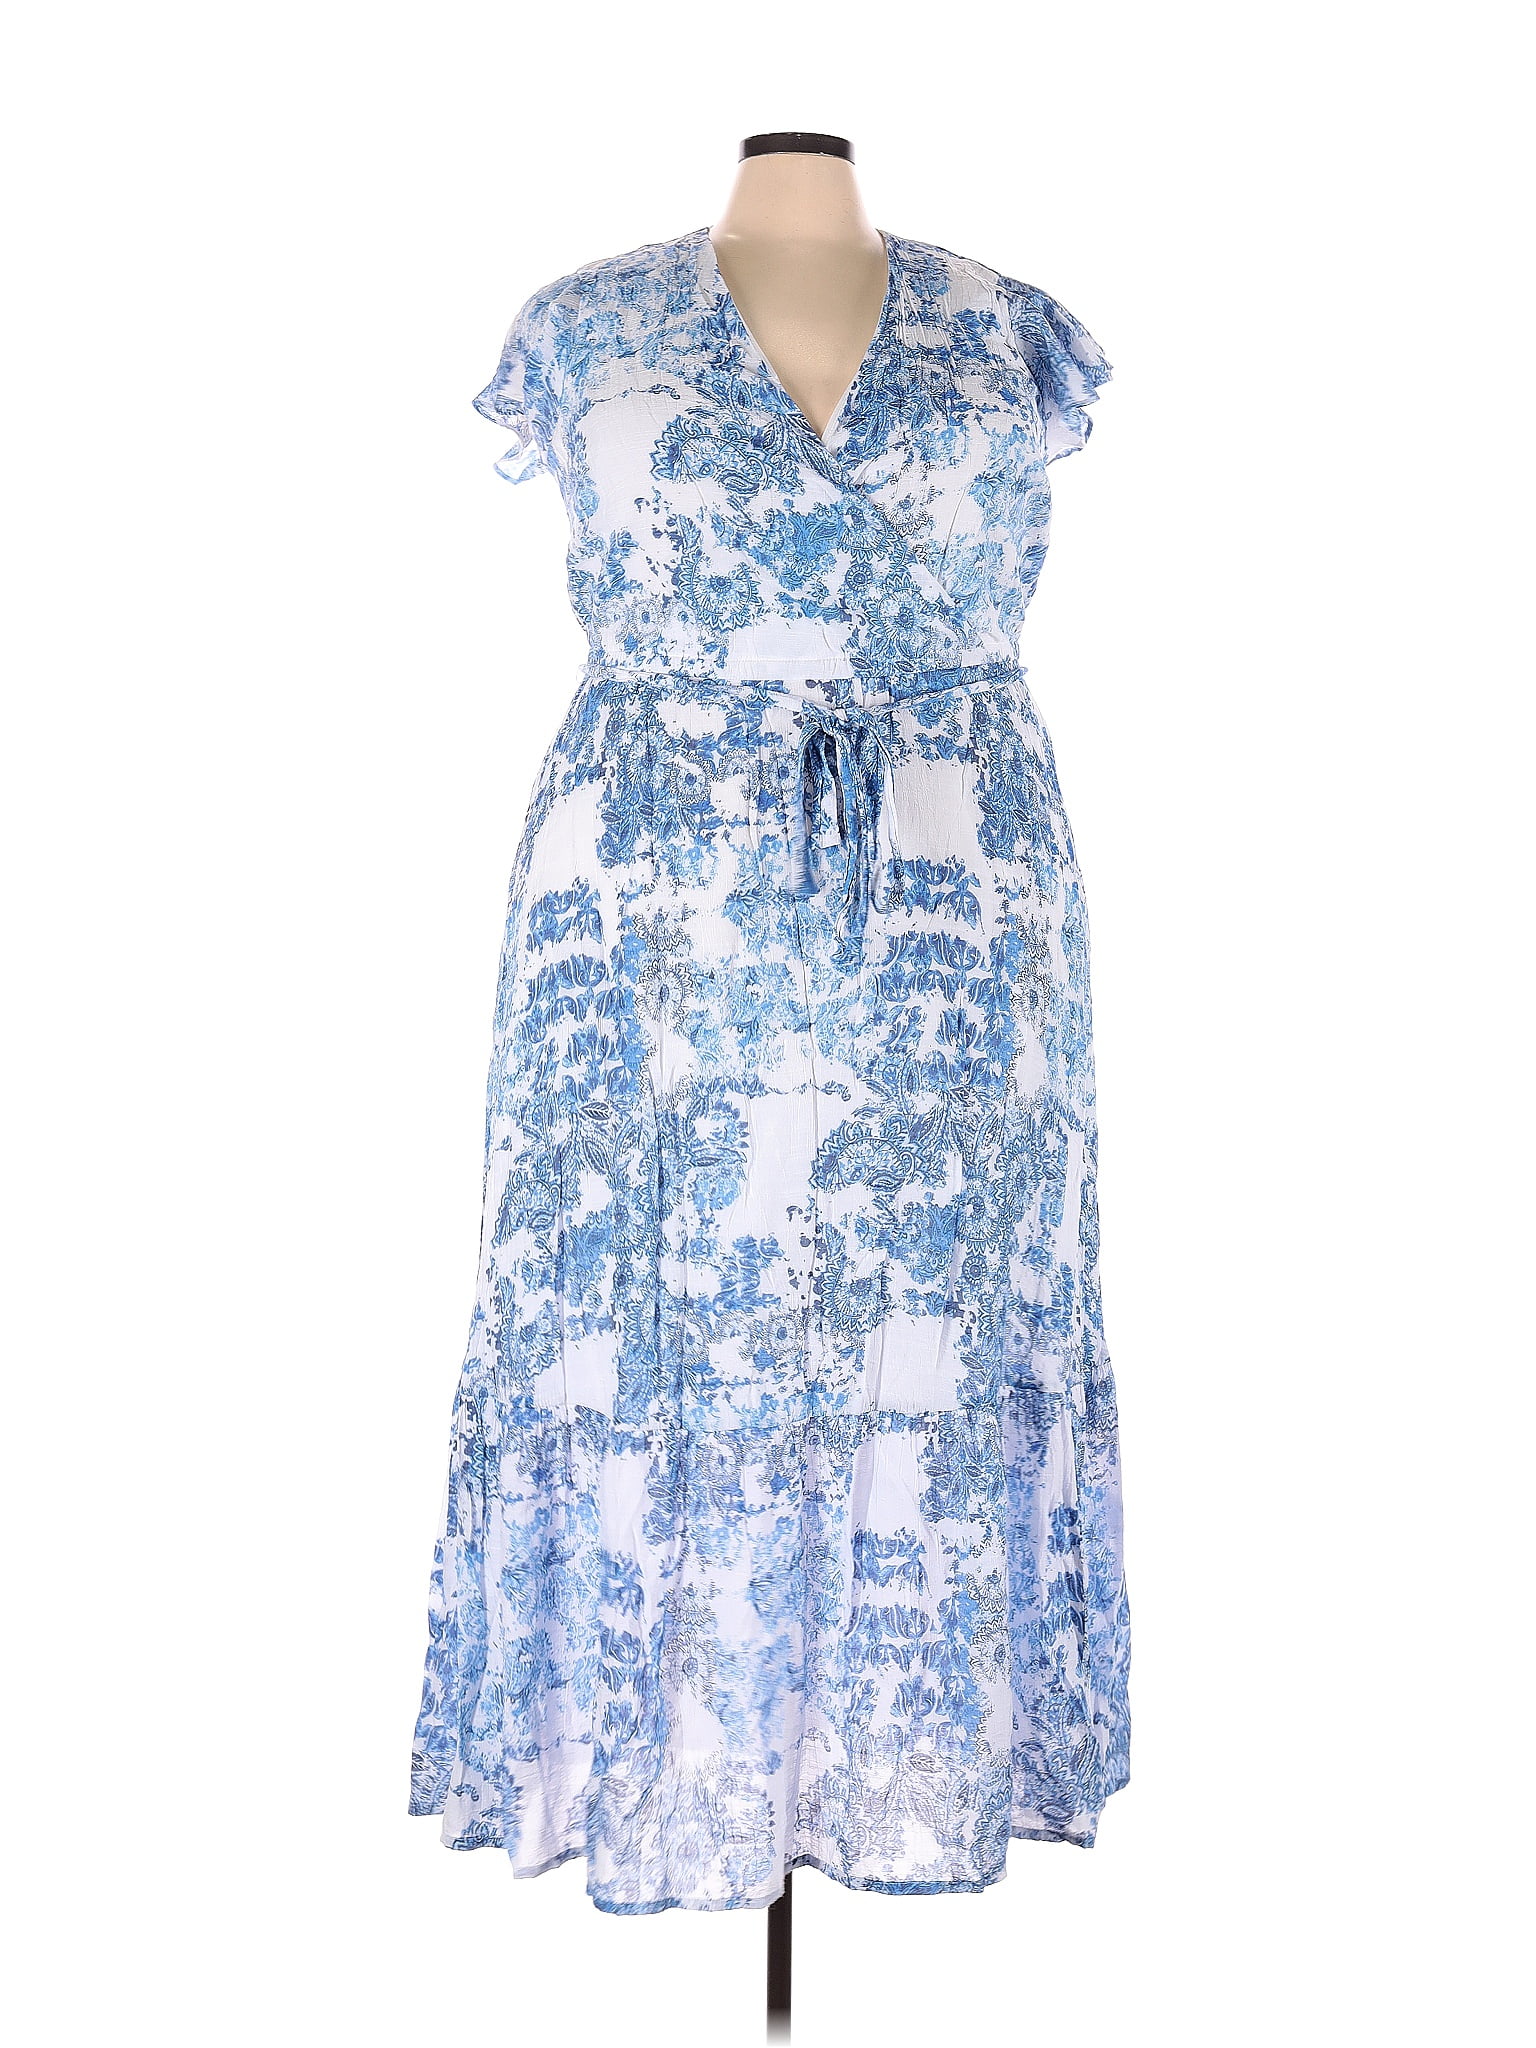 Lane Bryant Floral Multi Color Blue Casual Dress Size 20 (Plus) - 52% ...